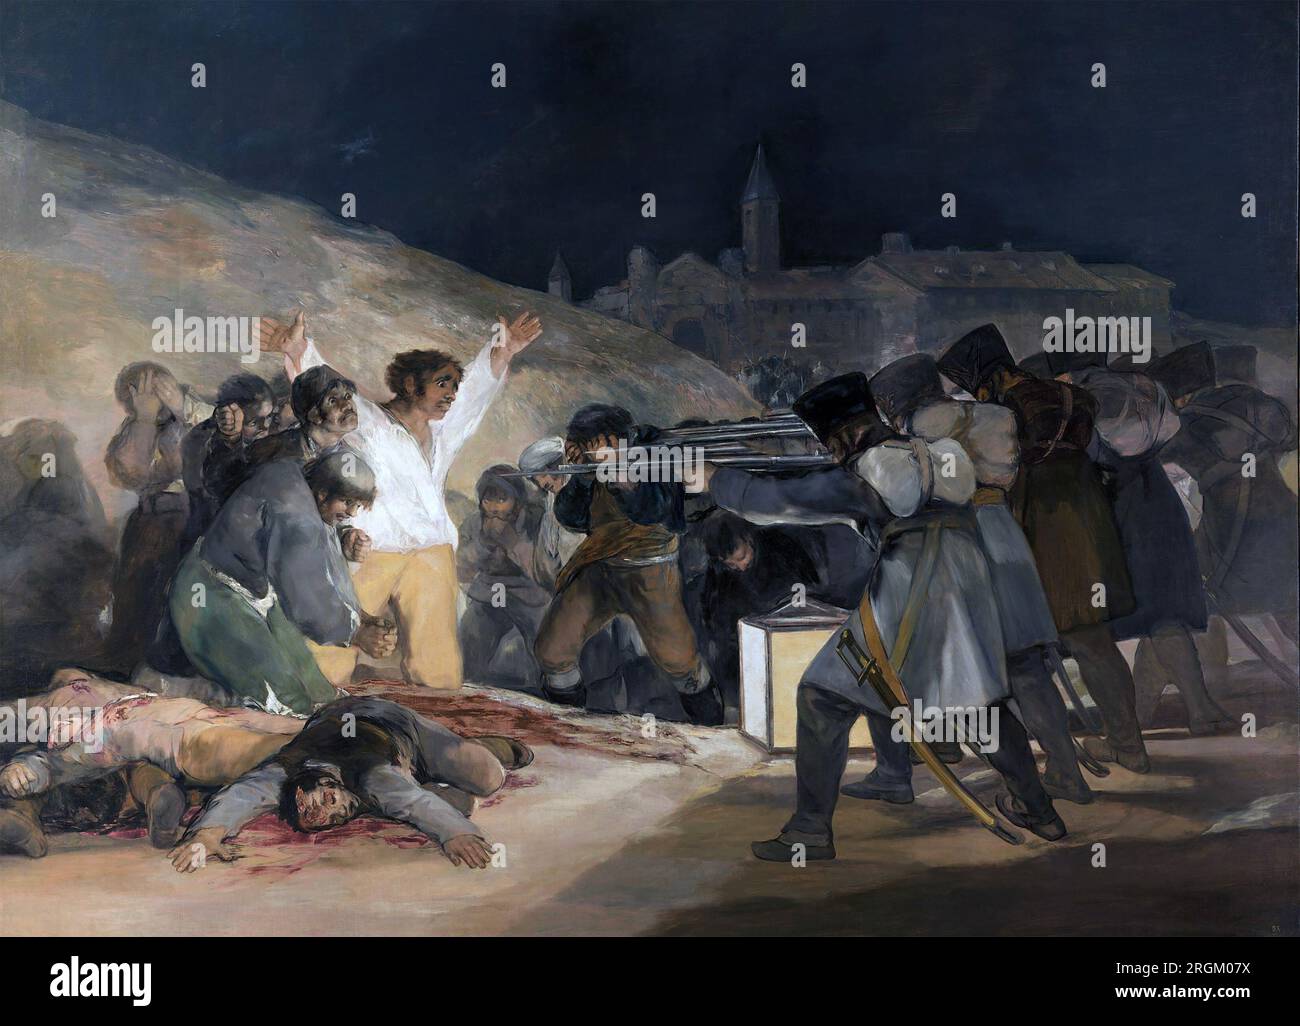 LE 3 MAI 1808 PAR Francisco Goya montre des résistants espagnols exécutés par des soldats français Banque D'Images